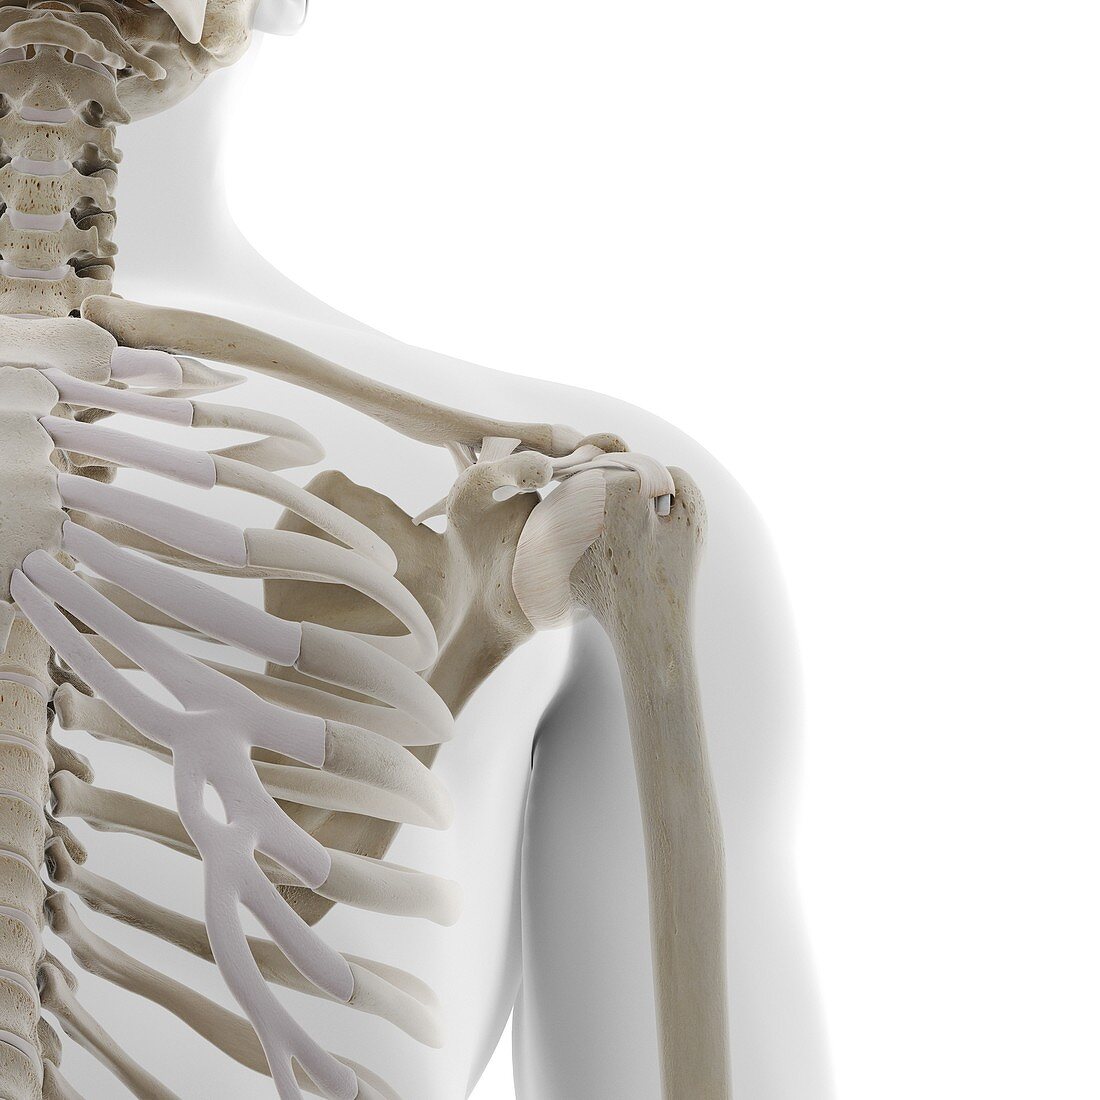 Skeletal shoulder, illustration